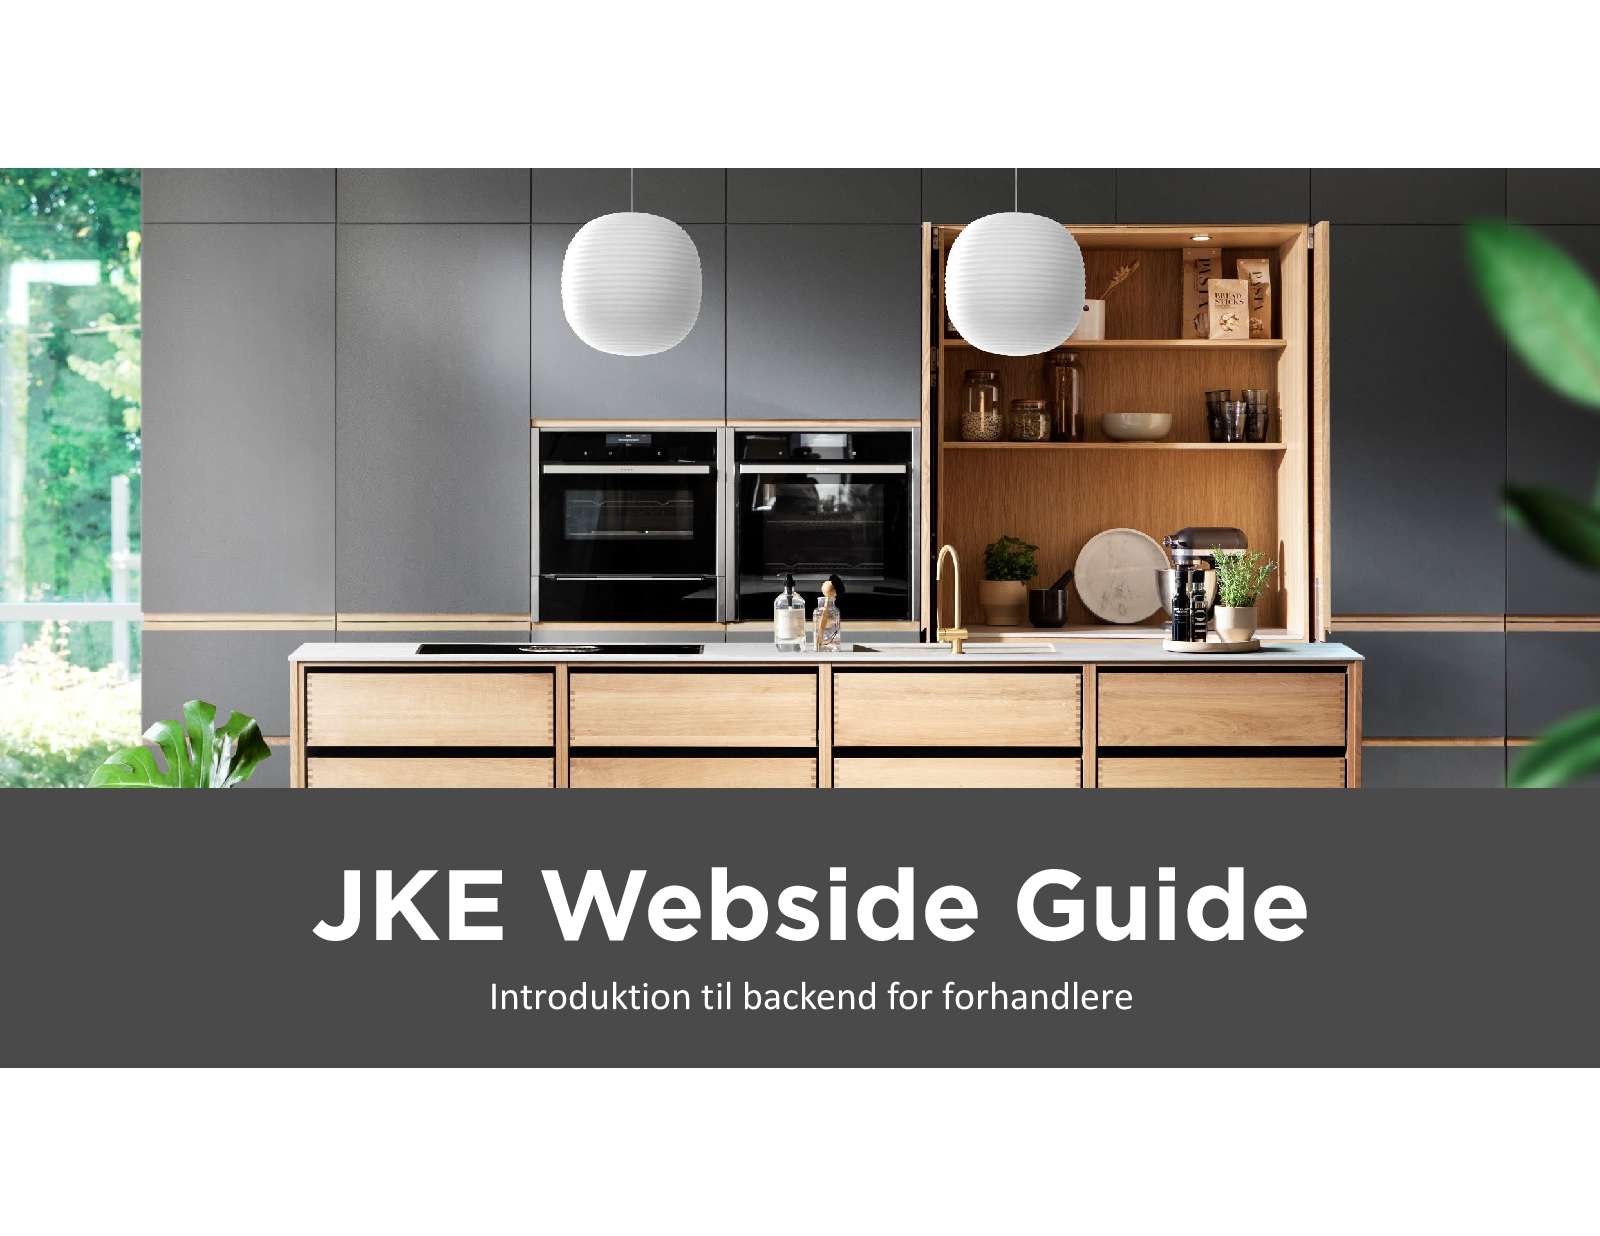 JKE Webside Guide 06mar19